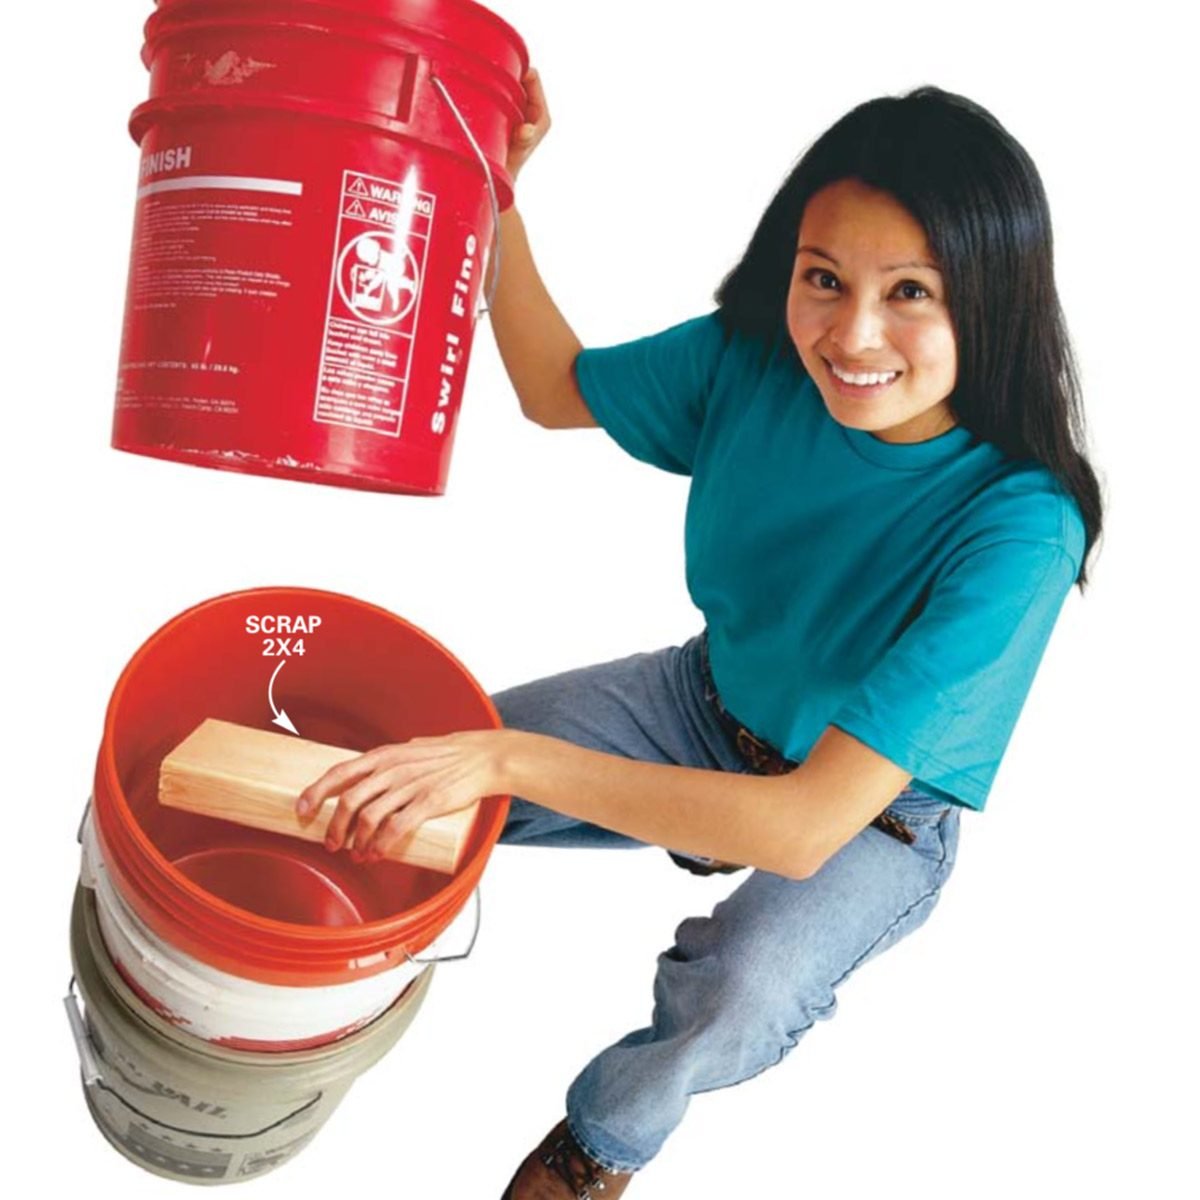 empty 5 gallon paint buckets